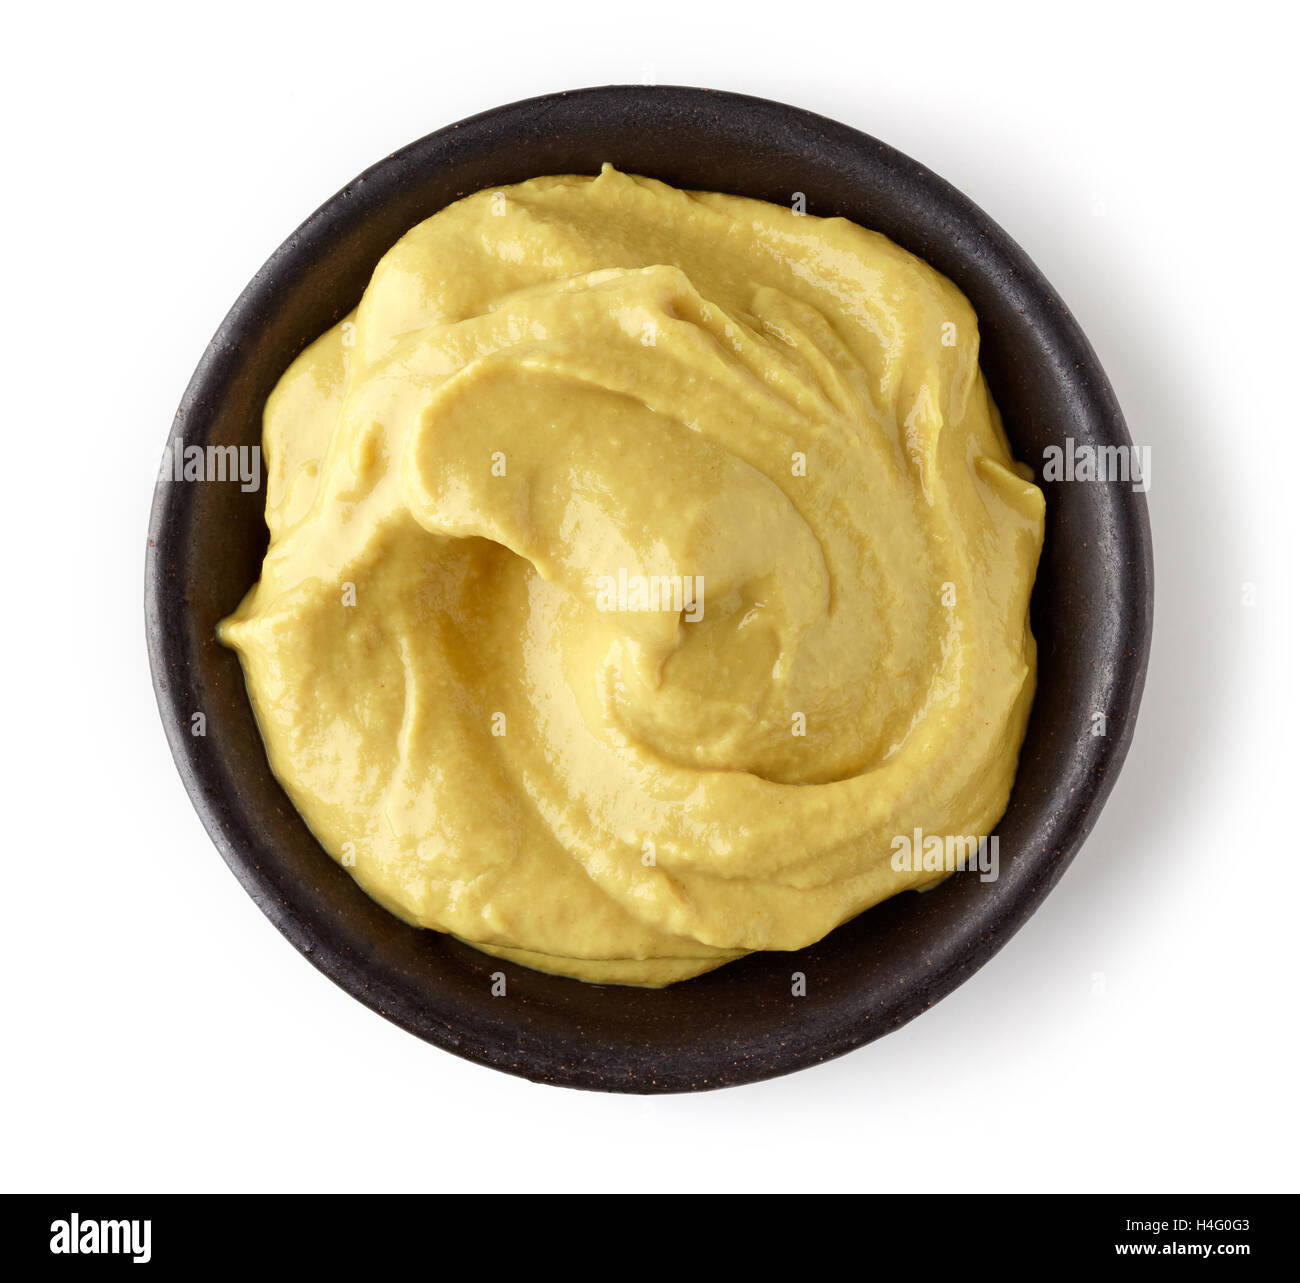 La senape in piatto rotondo isolato su sfondo bianco, vista dall'alto Foto Stock